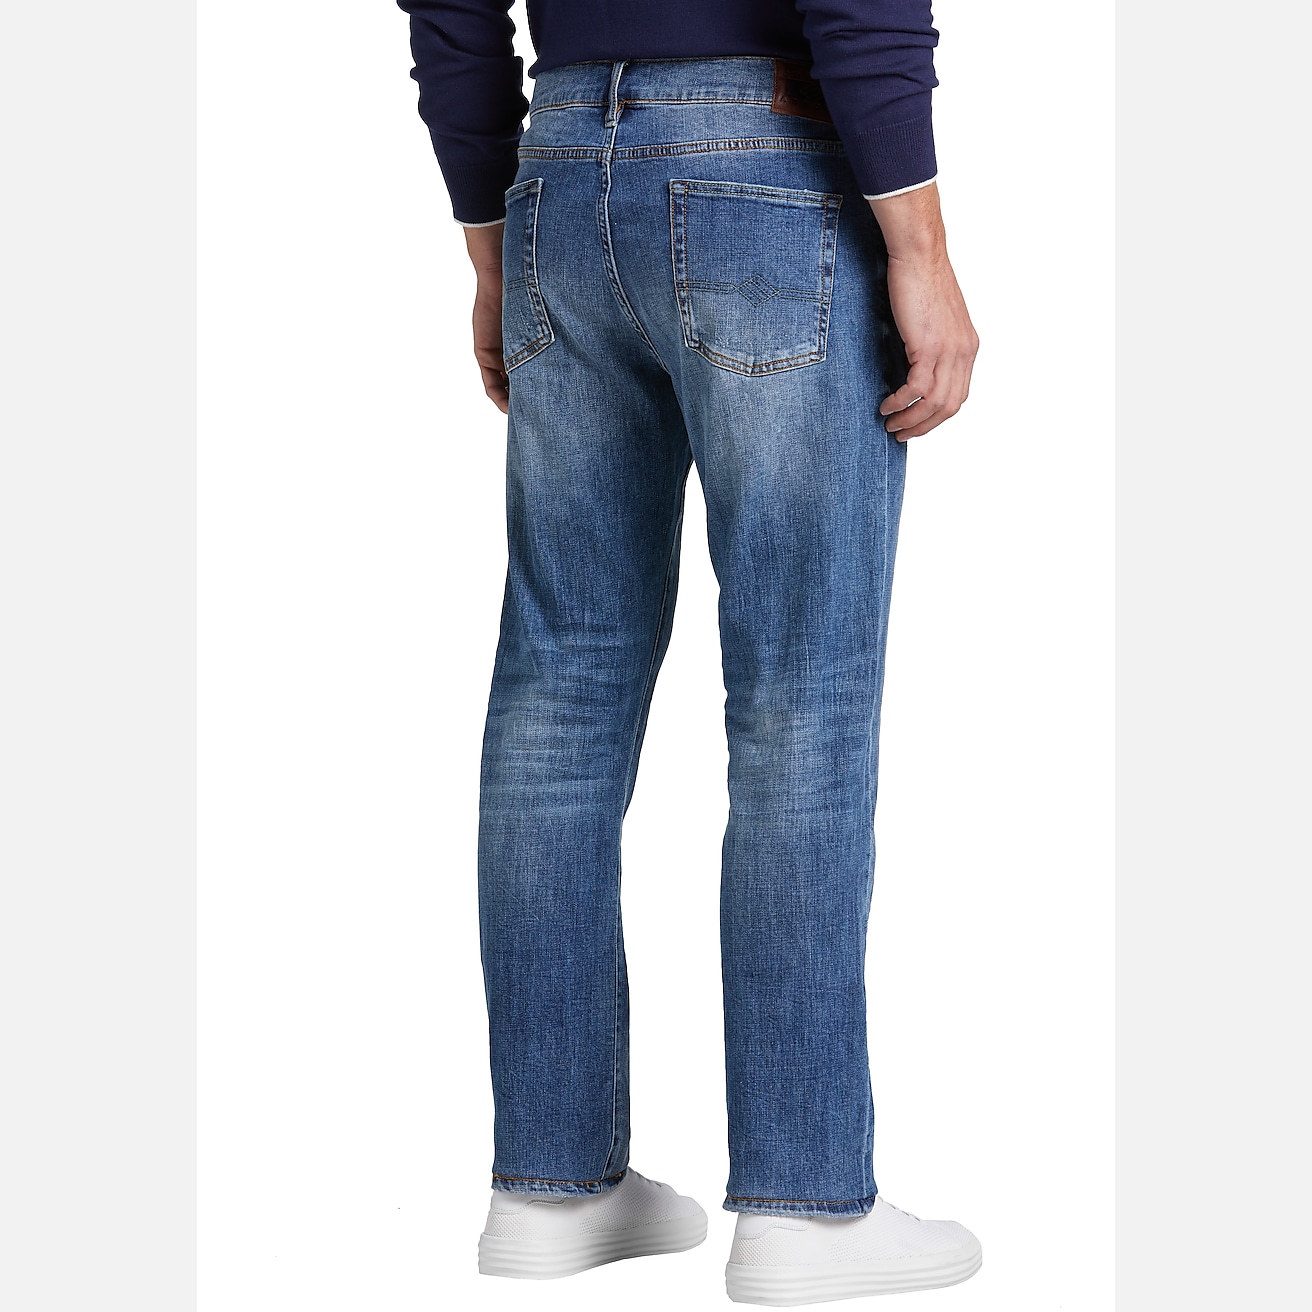 Joseph Abboud Slim Fit Jeans, All Sale